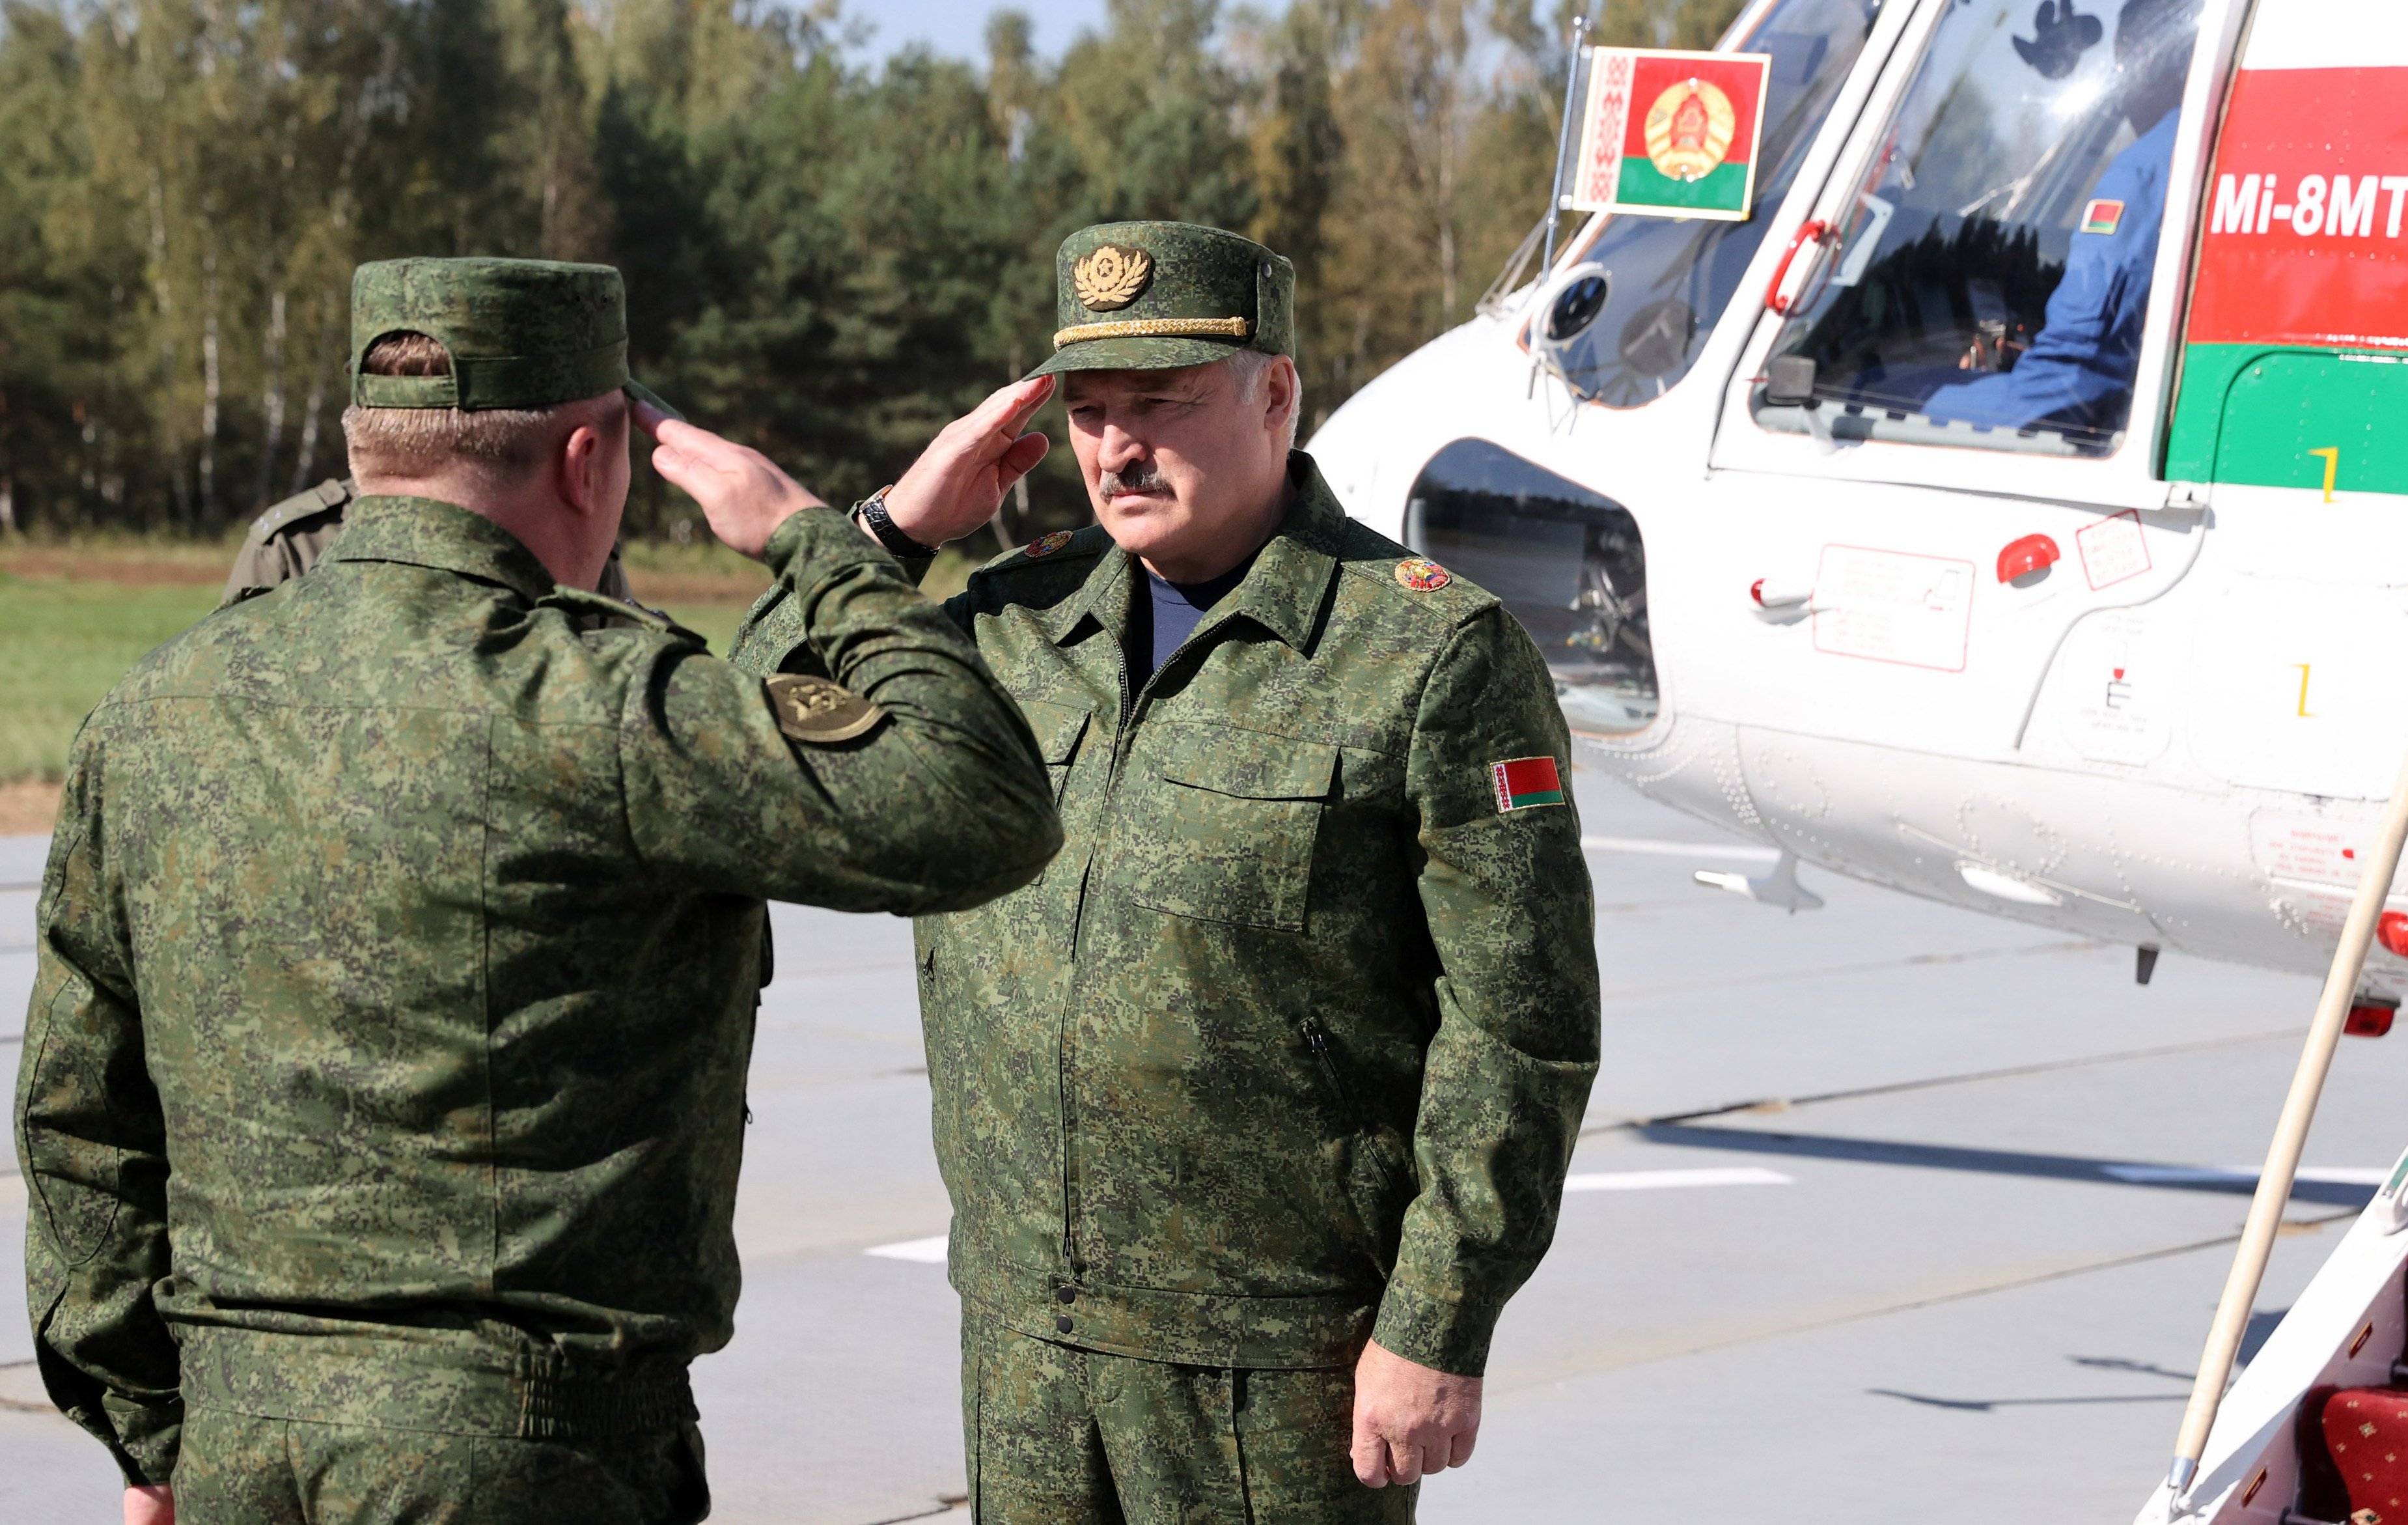 Aleksandr Łukaszenka w mundurze przyjmuje meldunek białoruskiego żołnierza przed helikopterem Mi-8